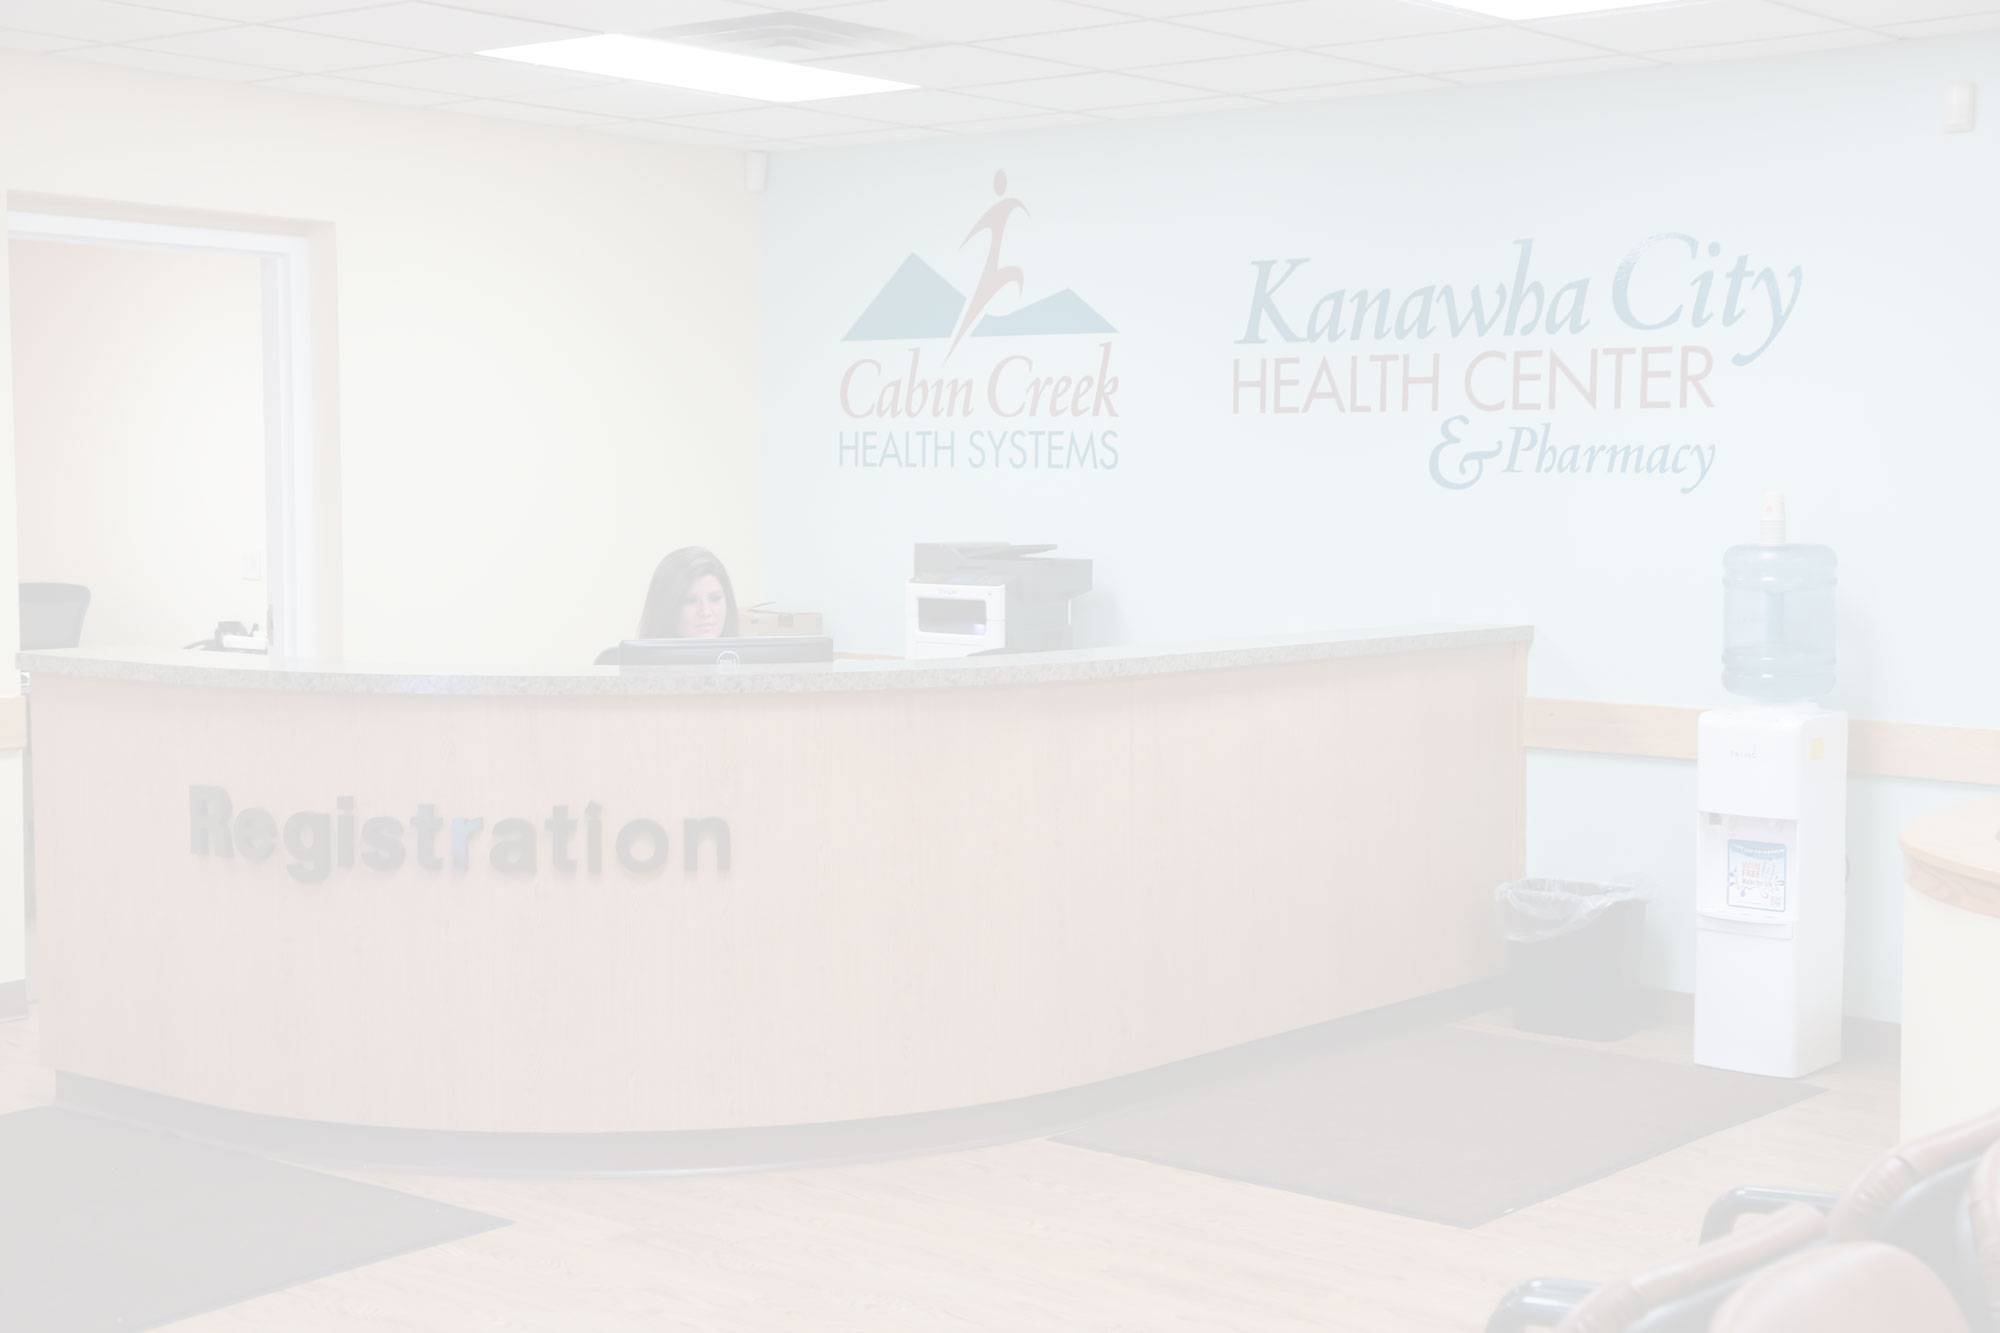 Kanawha City Health Center Pharmacy